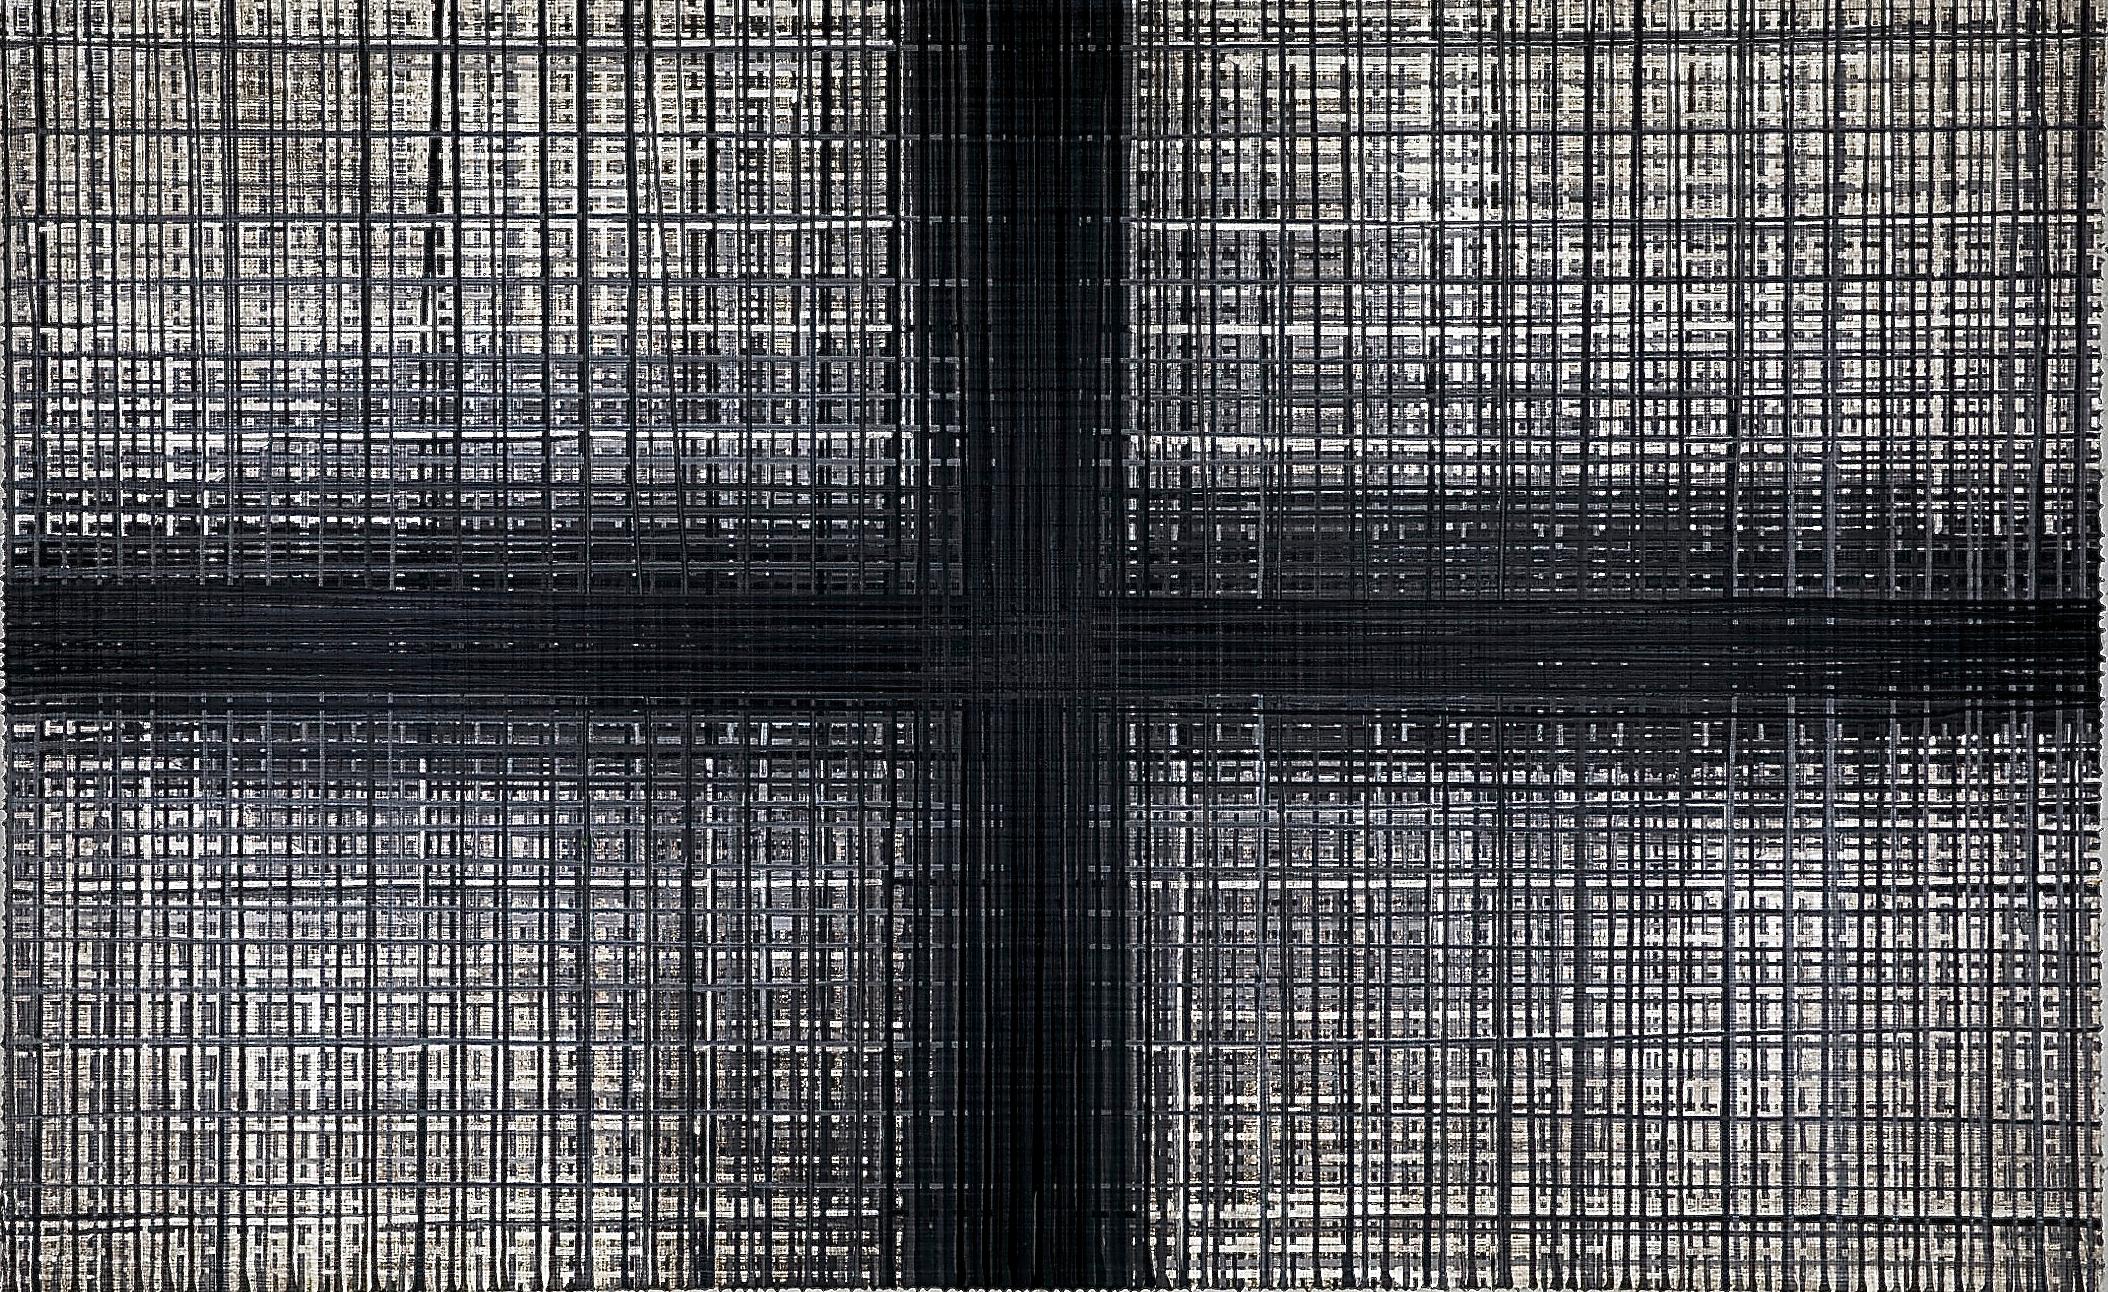 Crucis Ferro von Jon James 
Acryl, geschliffenes Metall und Holzkohle auf Leinwand
96" x 60"

"Crucis Ferro", abstraktes Acrylgemälde des in New York lebenden Malers Jon James. Jon James verwendet eine für ihn charakteristische Methode, bei der er